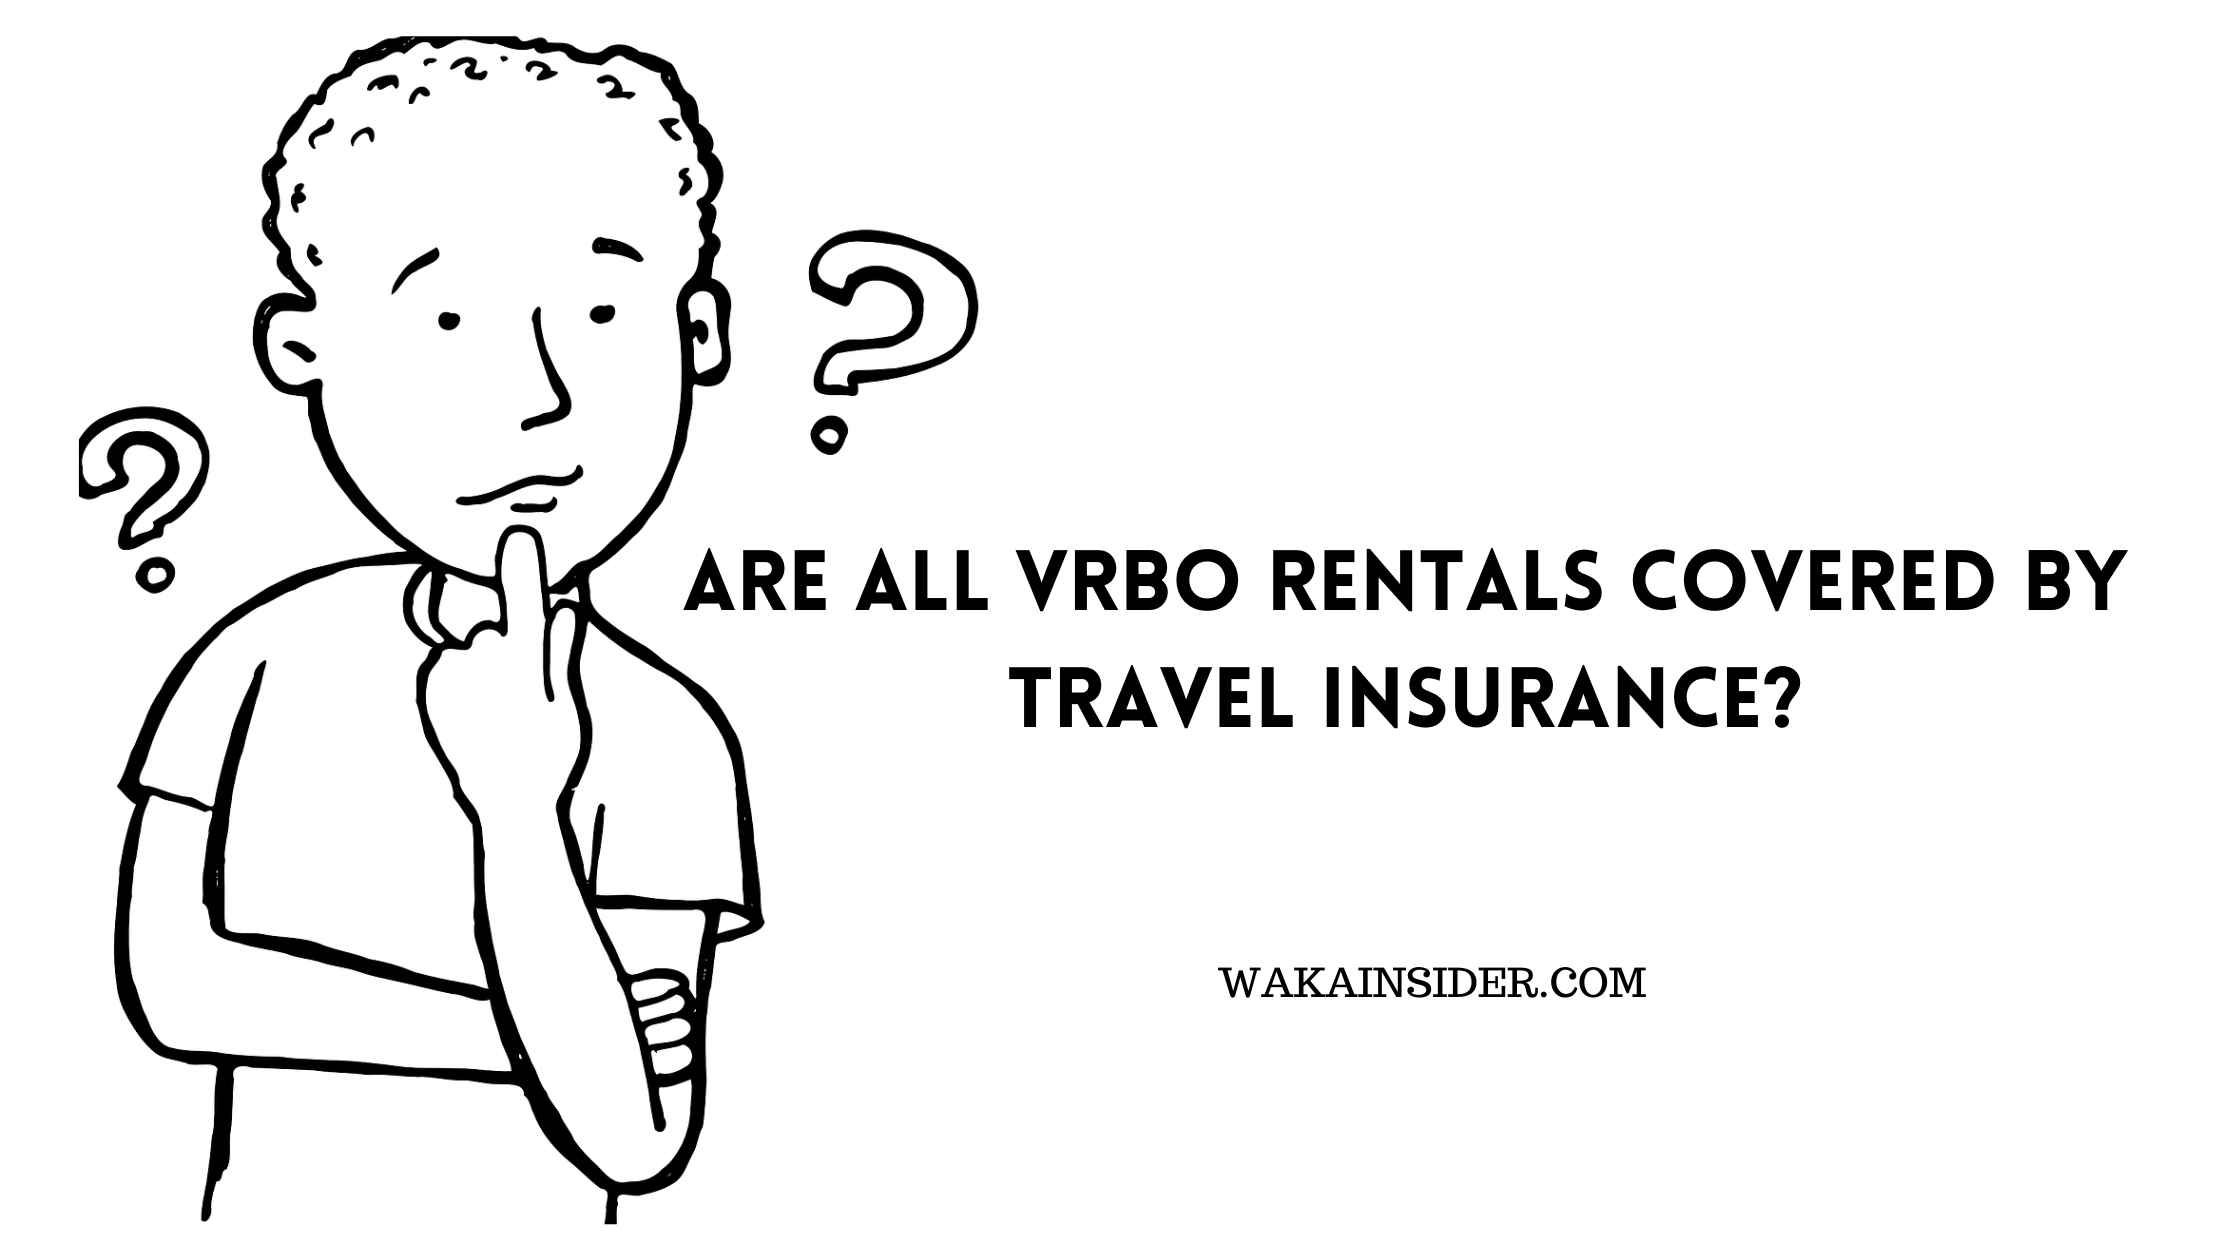 travel insurance for vrbo rentals